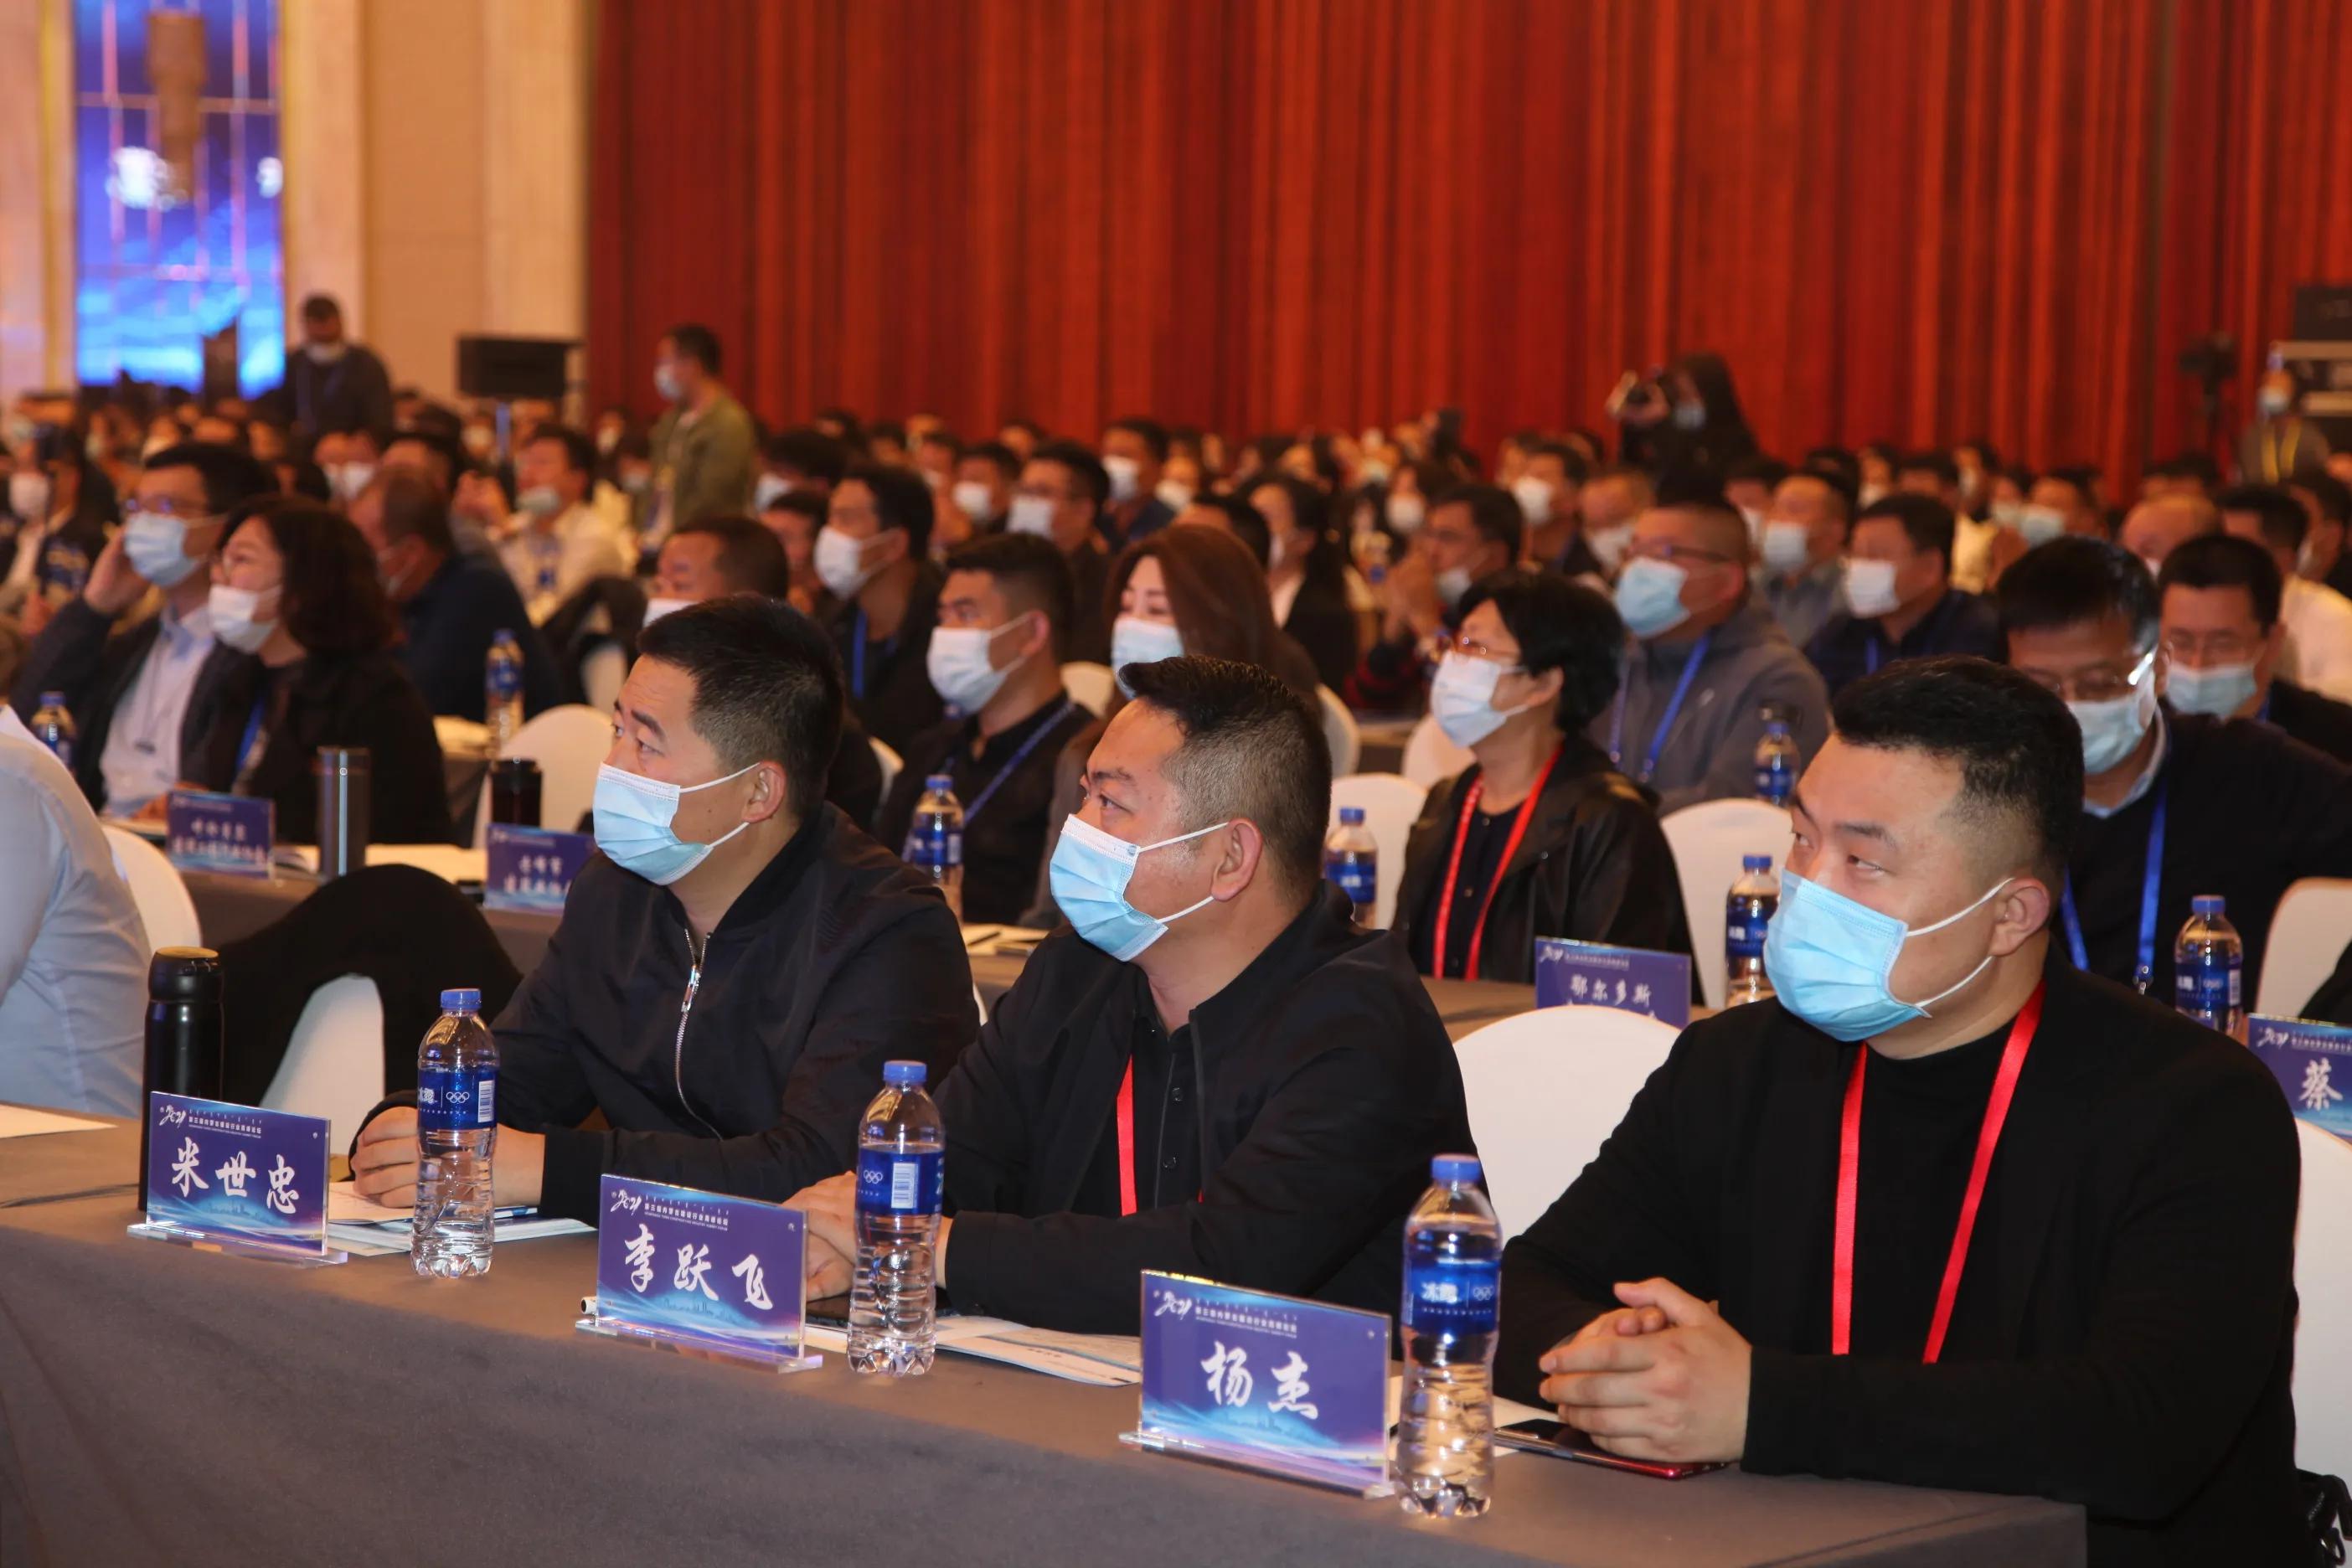 数字强企 战略领航 第三届内蒙古建设行业高峰论坛在呼和浩特市开幕